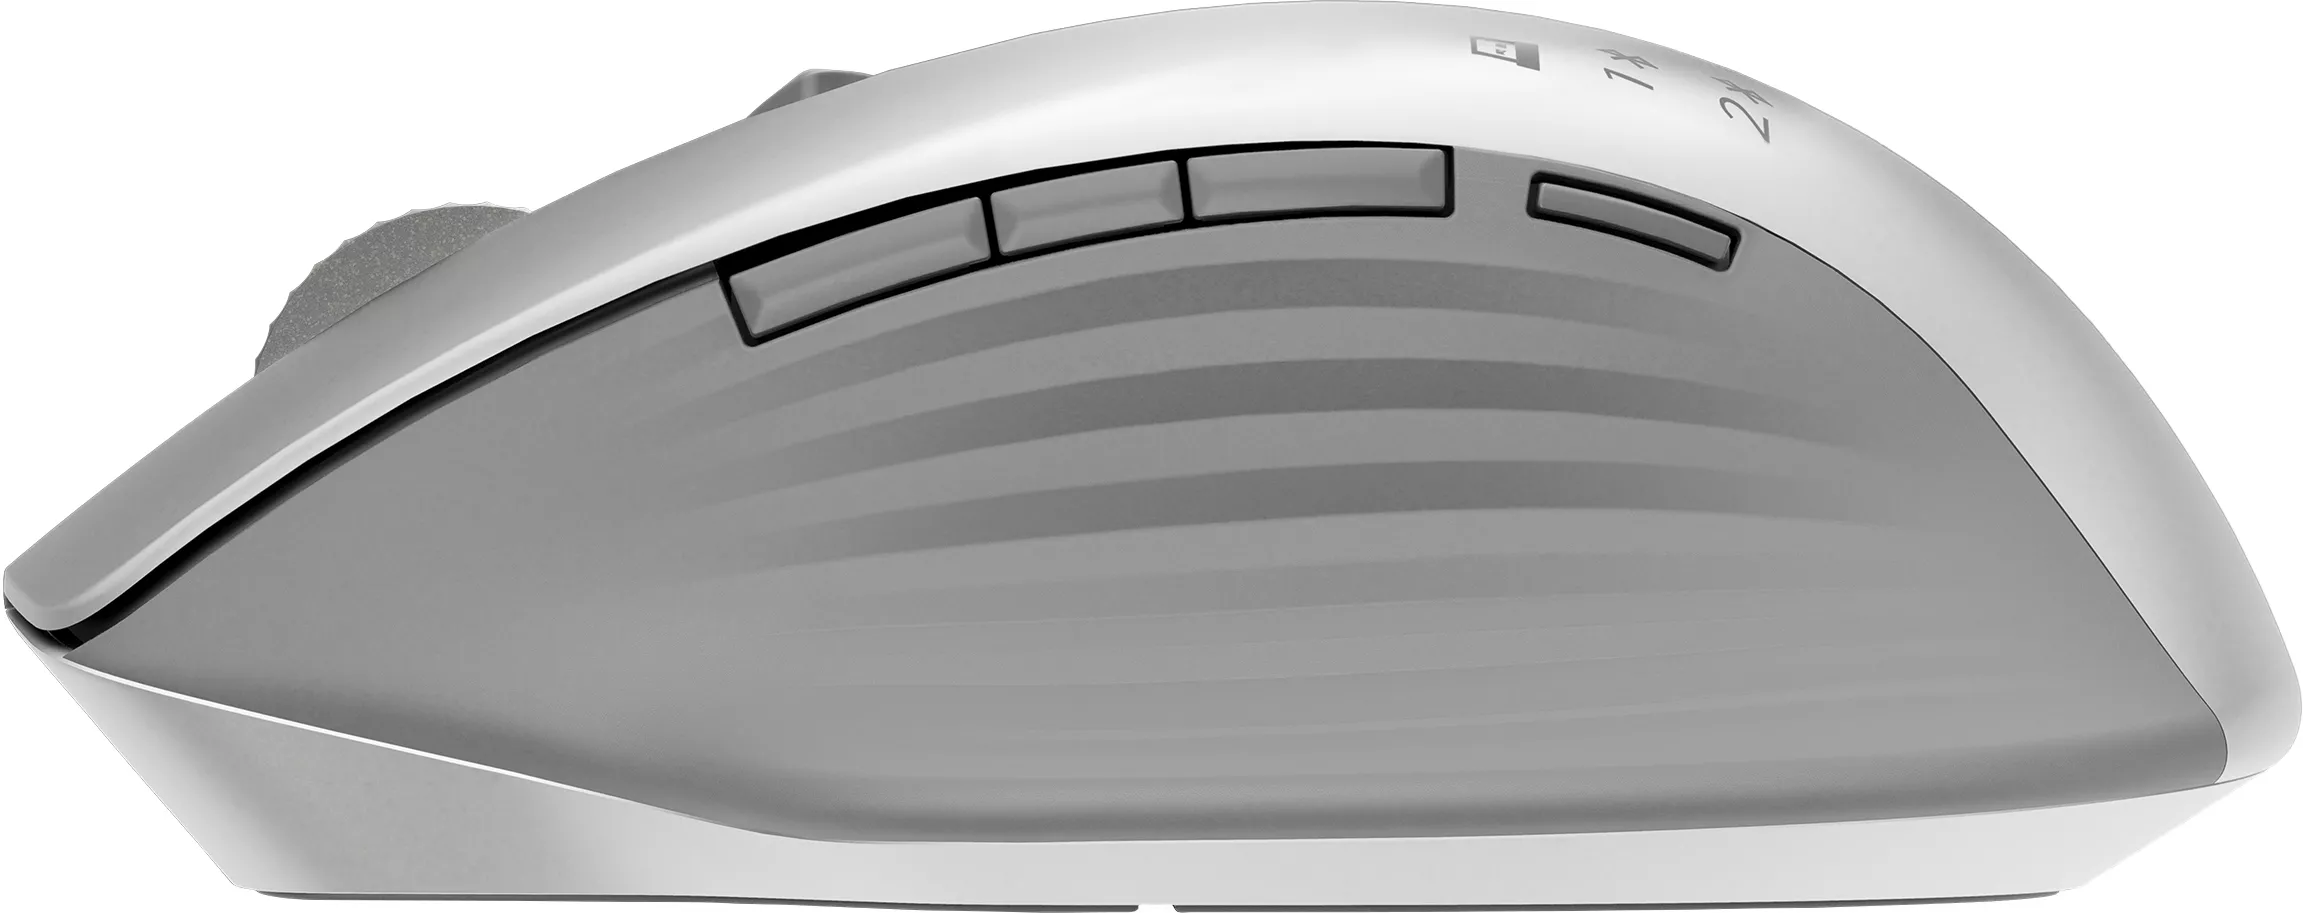 Vente HP Creator 930 SLV WRLS Mouse HP au meilleur prix - visuel 4